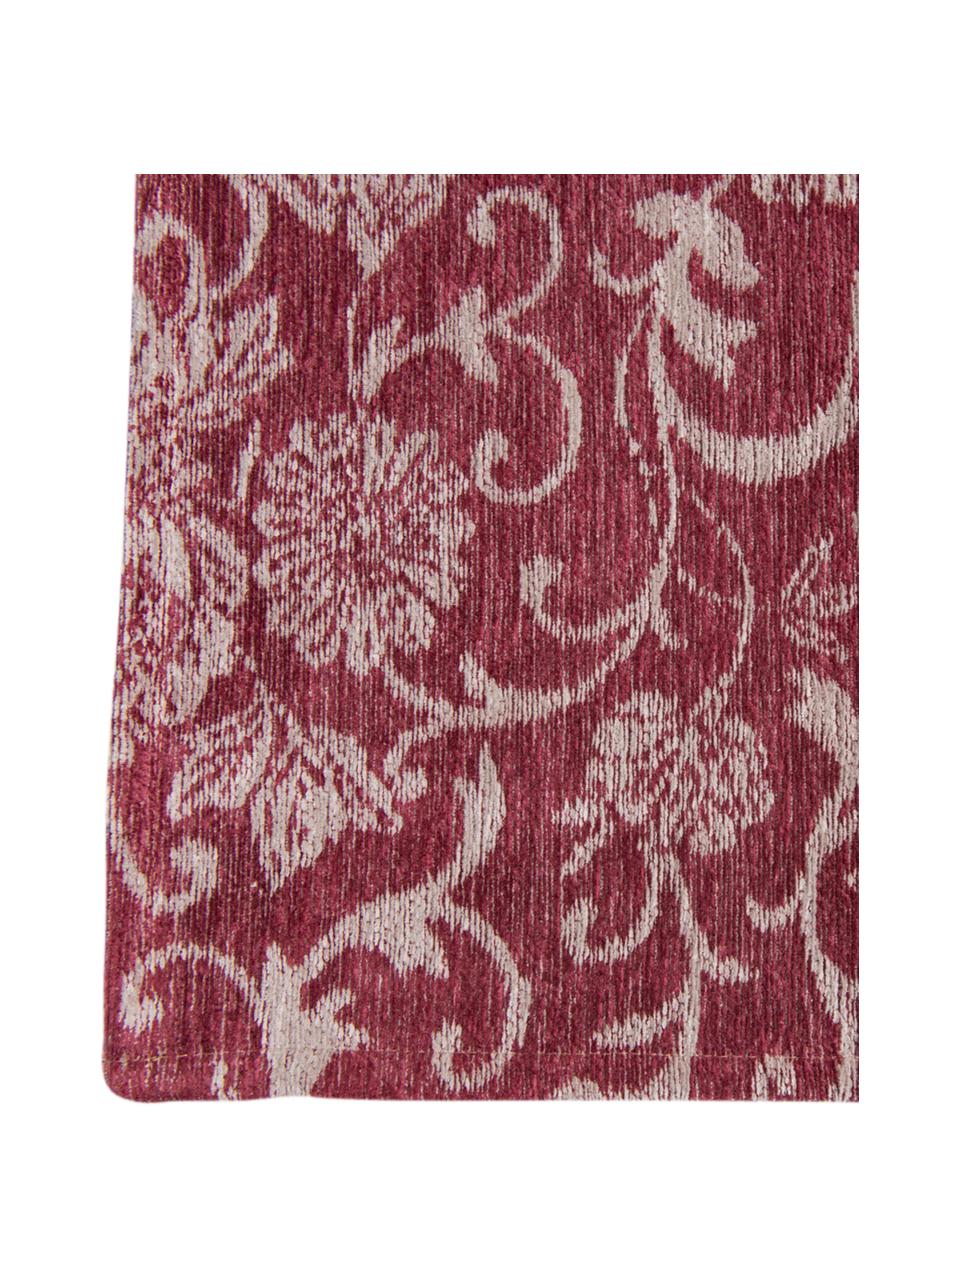 Žinylkový koberec s patchworkovým vzorem Multi, Červená, béžová, černá